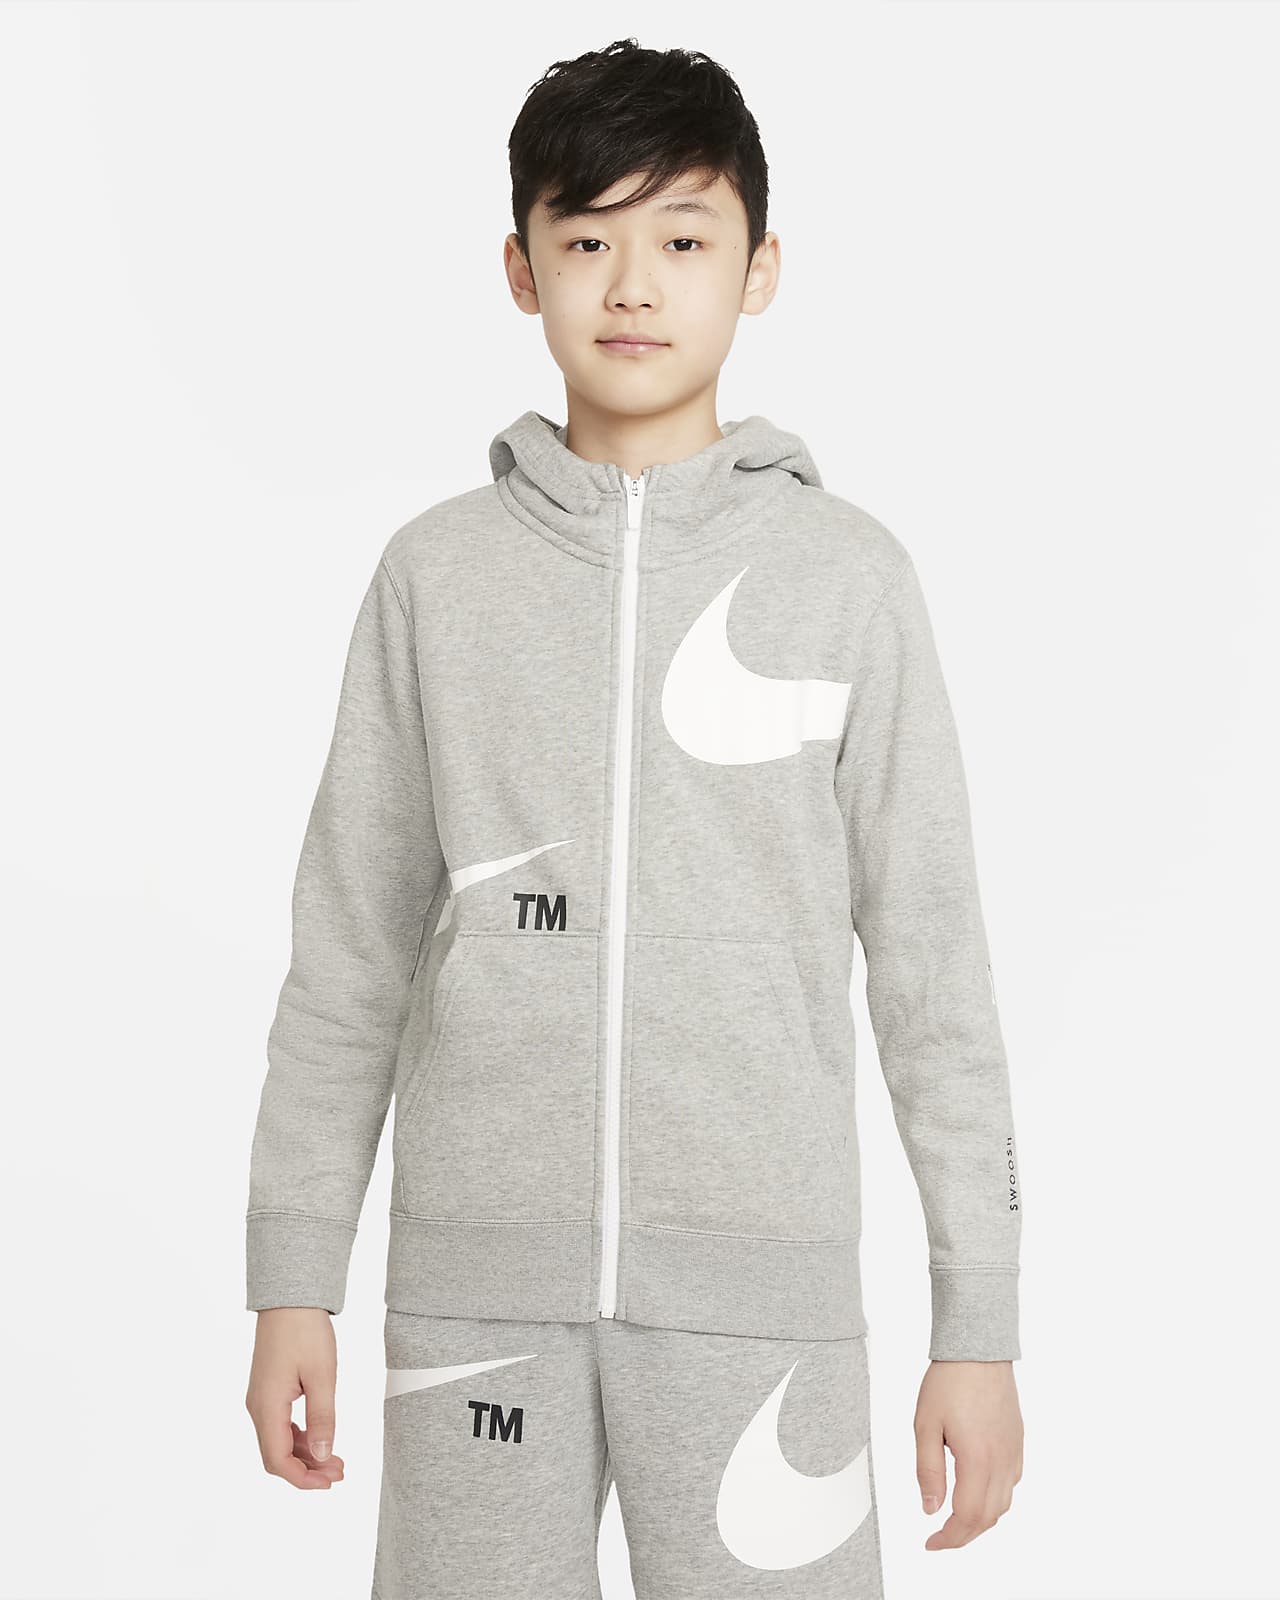 Nike Sportswear Swoosh Older Kids' (Boys') Fleece Full-Zip Hoodie